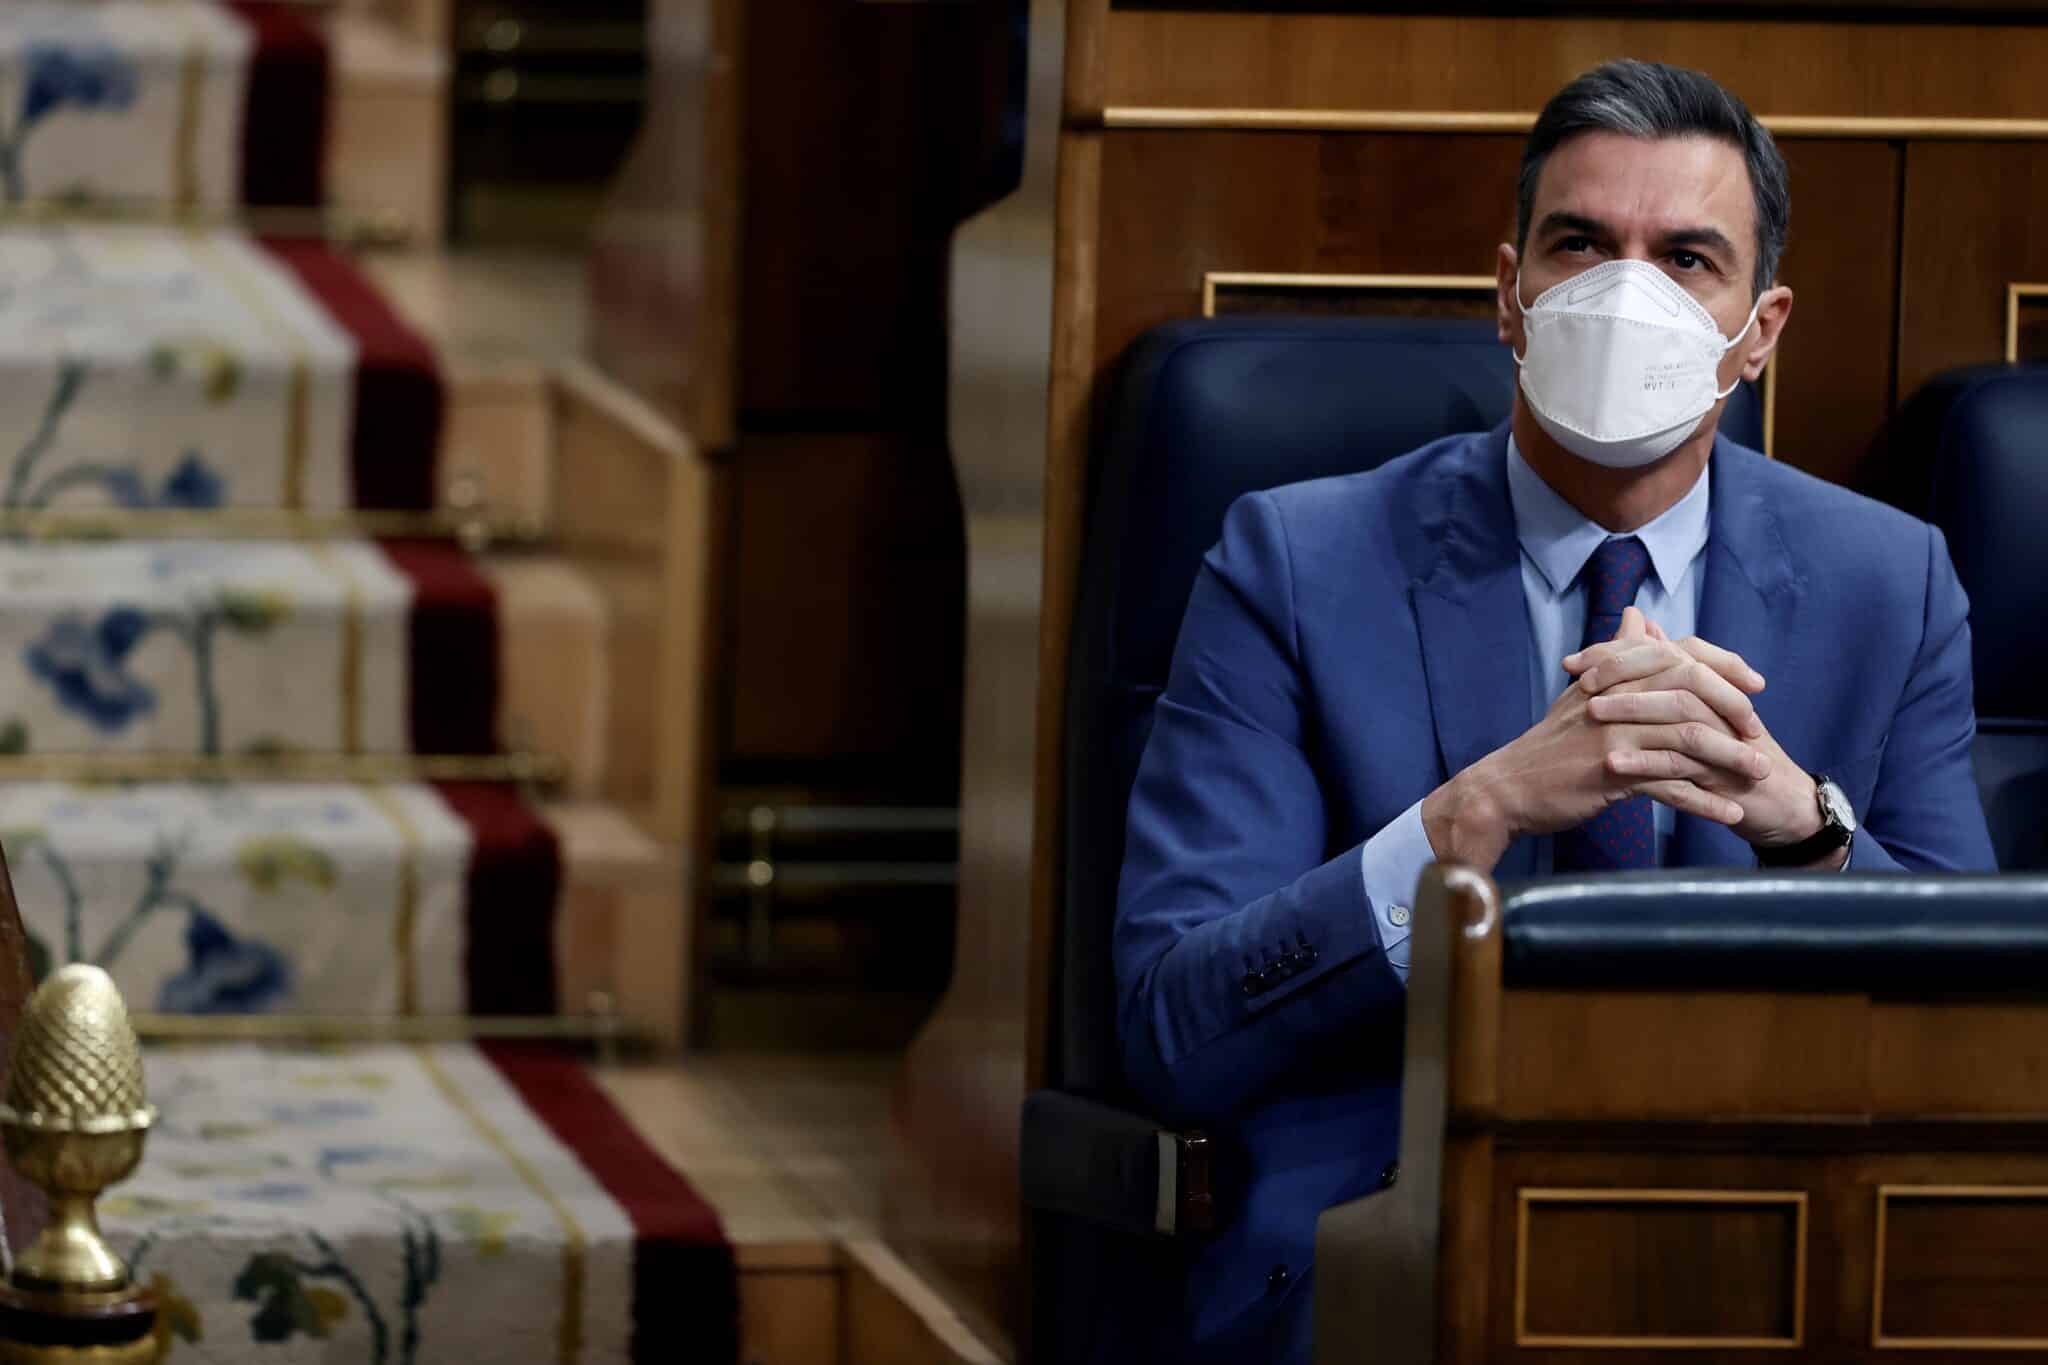 El presidente del Gobierno, Pedro Sánchez durante la sesión de control al gobierno este miércoles en el Congreso de los diputados.